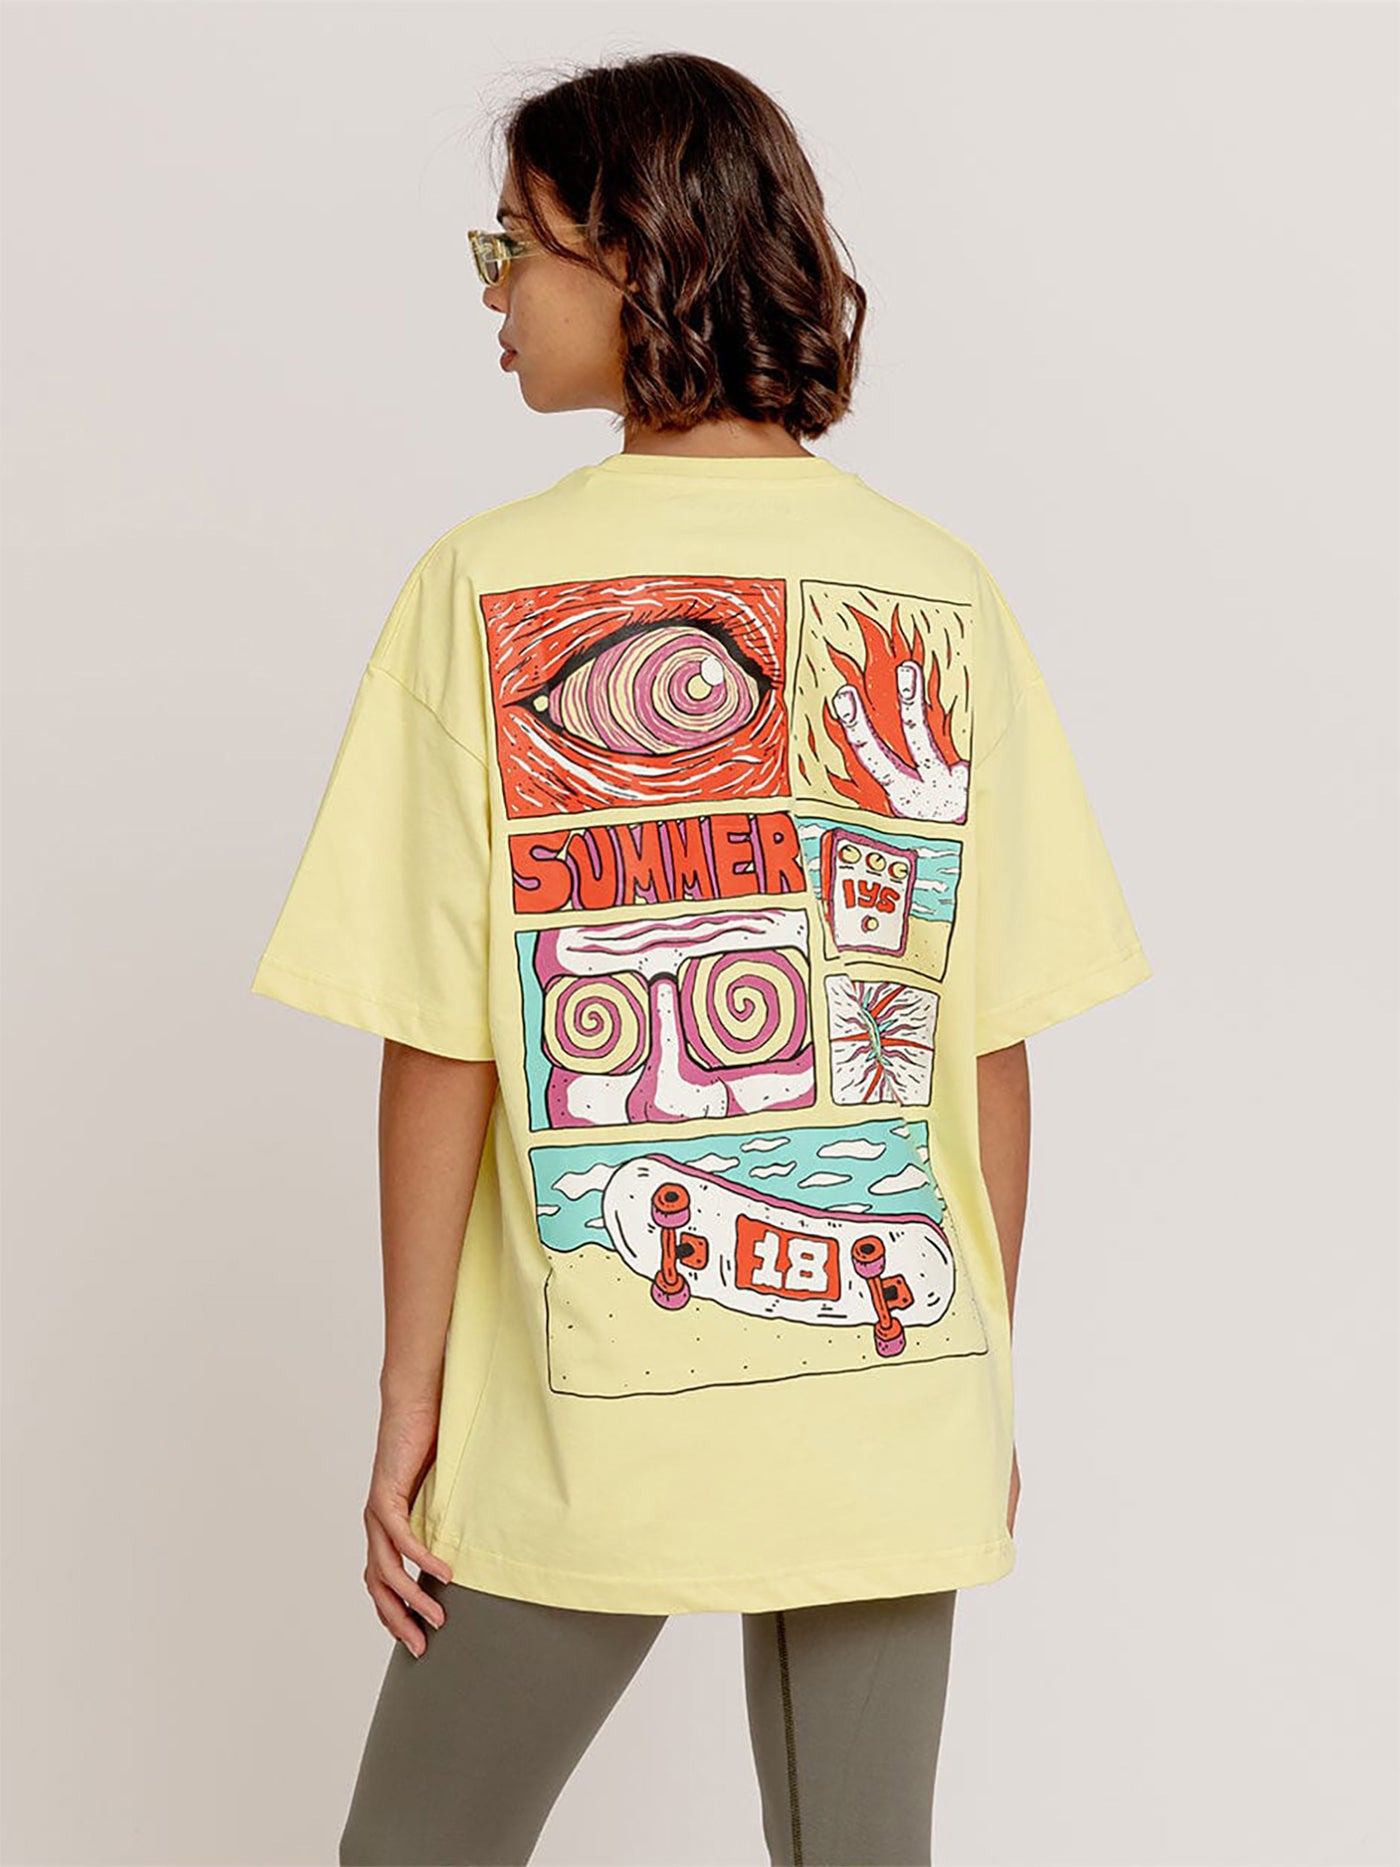 Unisex T-Shirt -"Summer Skate"- Oversized